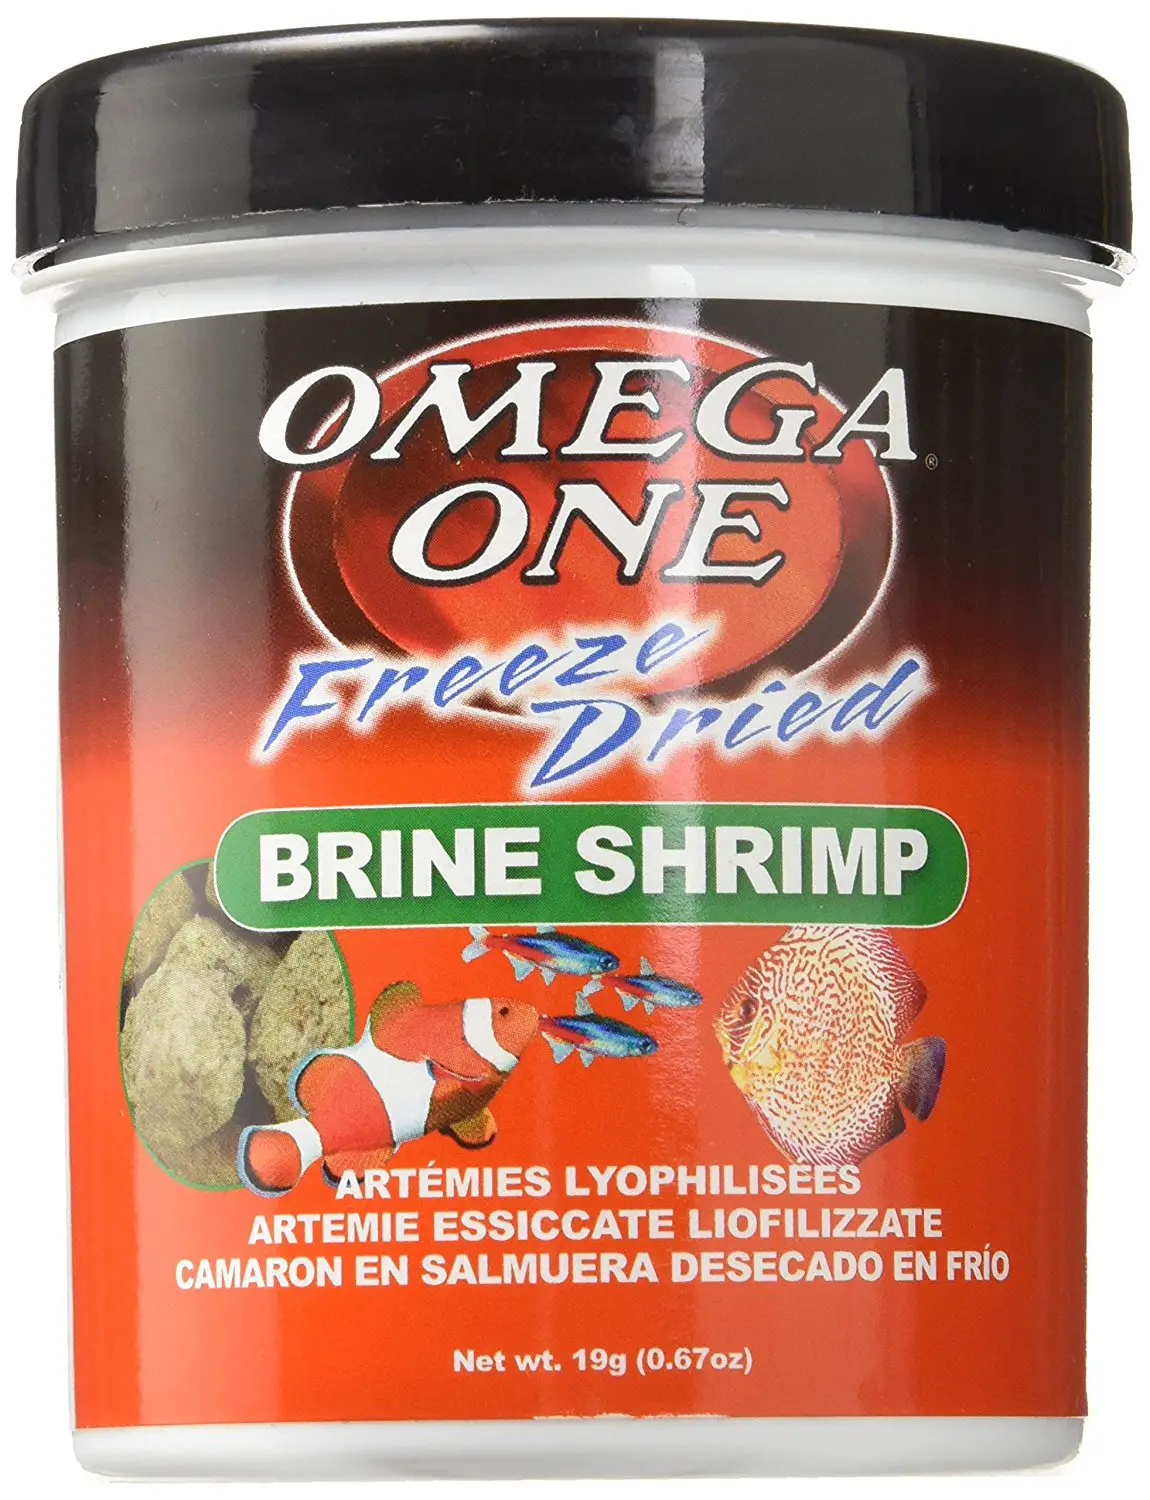  Omega One Freed Dried Brine Shrimp